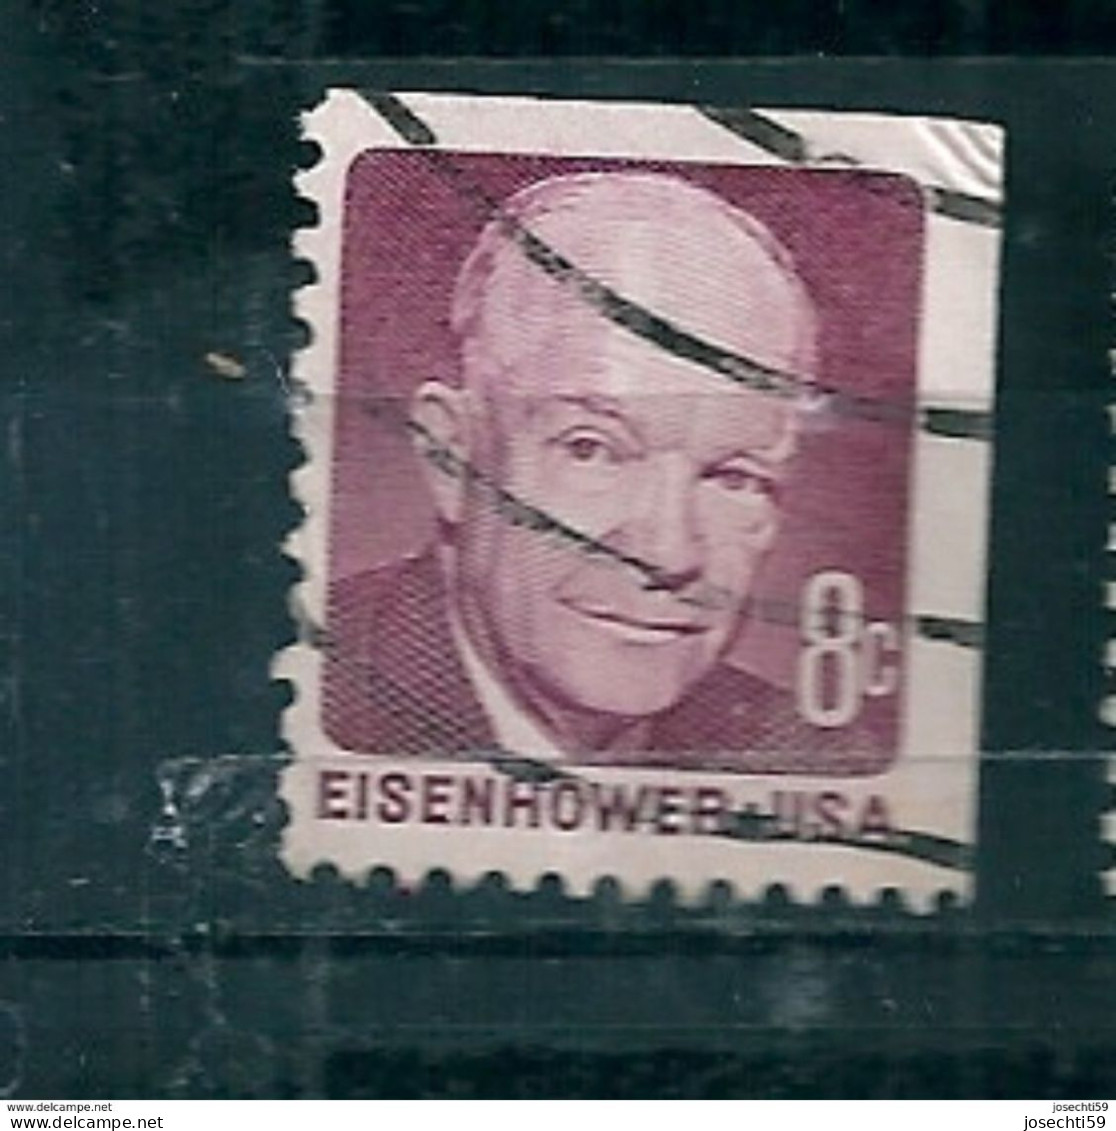 N°922 Dwight D. Eisenhower 8 Ct  USA Oblitéré 1971 Stamp Etats Unis D'Amérique Timbre USA - Used Stamps